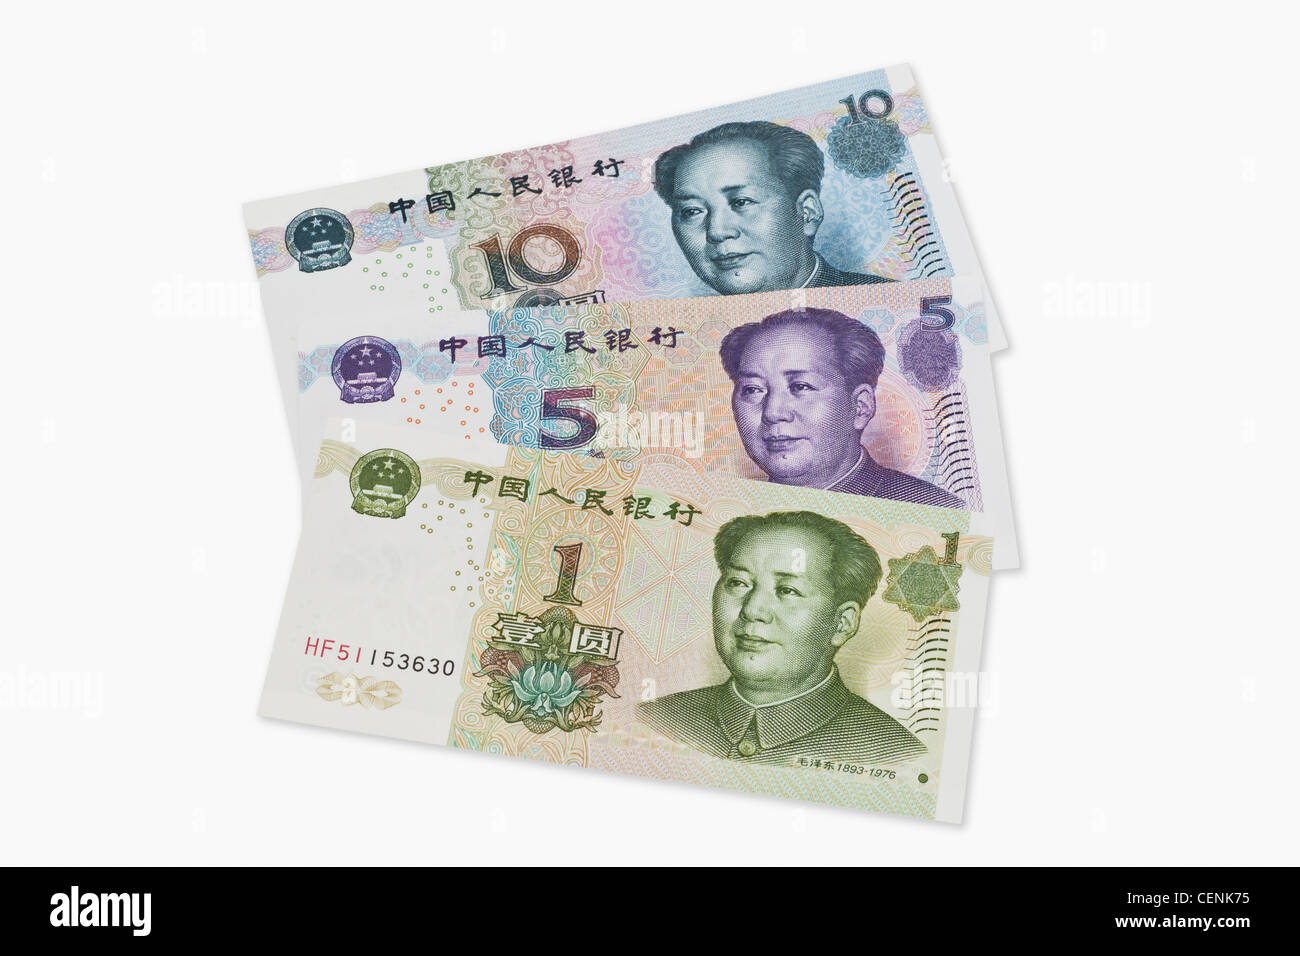 1, 5 e 10 yuan fatture con il ritratto di Mao Zedong. Il renminbi, la valuta cinese, è stato introdotto nel 1949. Foto Stock